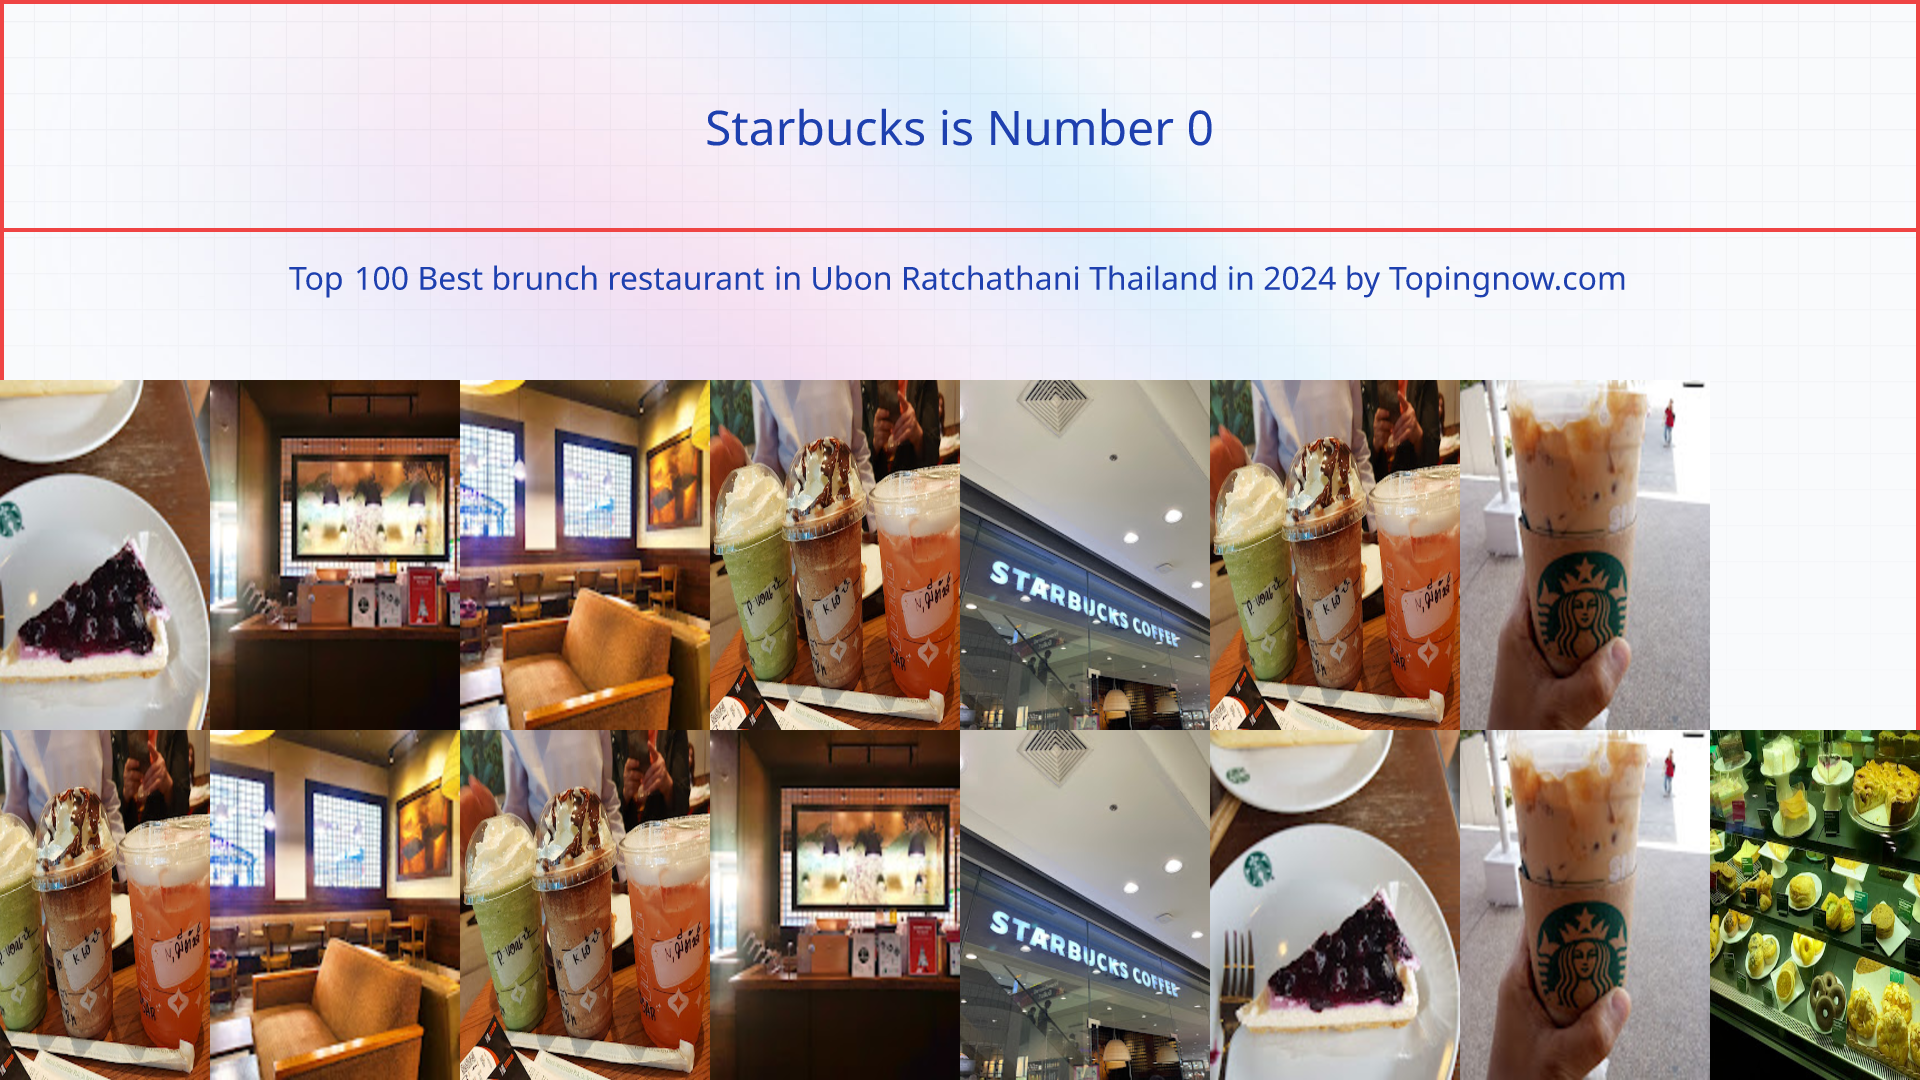 Starbucks: Top 100 Best brunch restaurant in Ubon Ratchathani Thailand in 2024